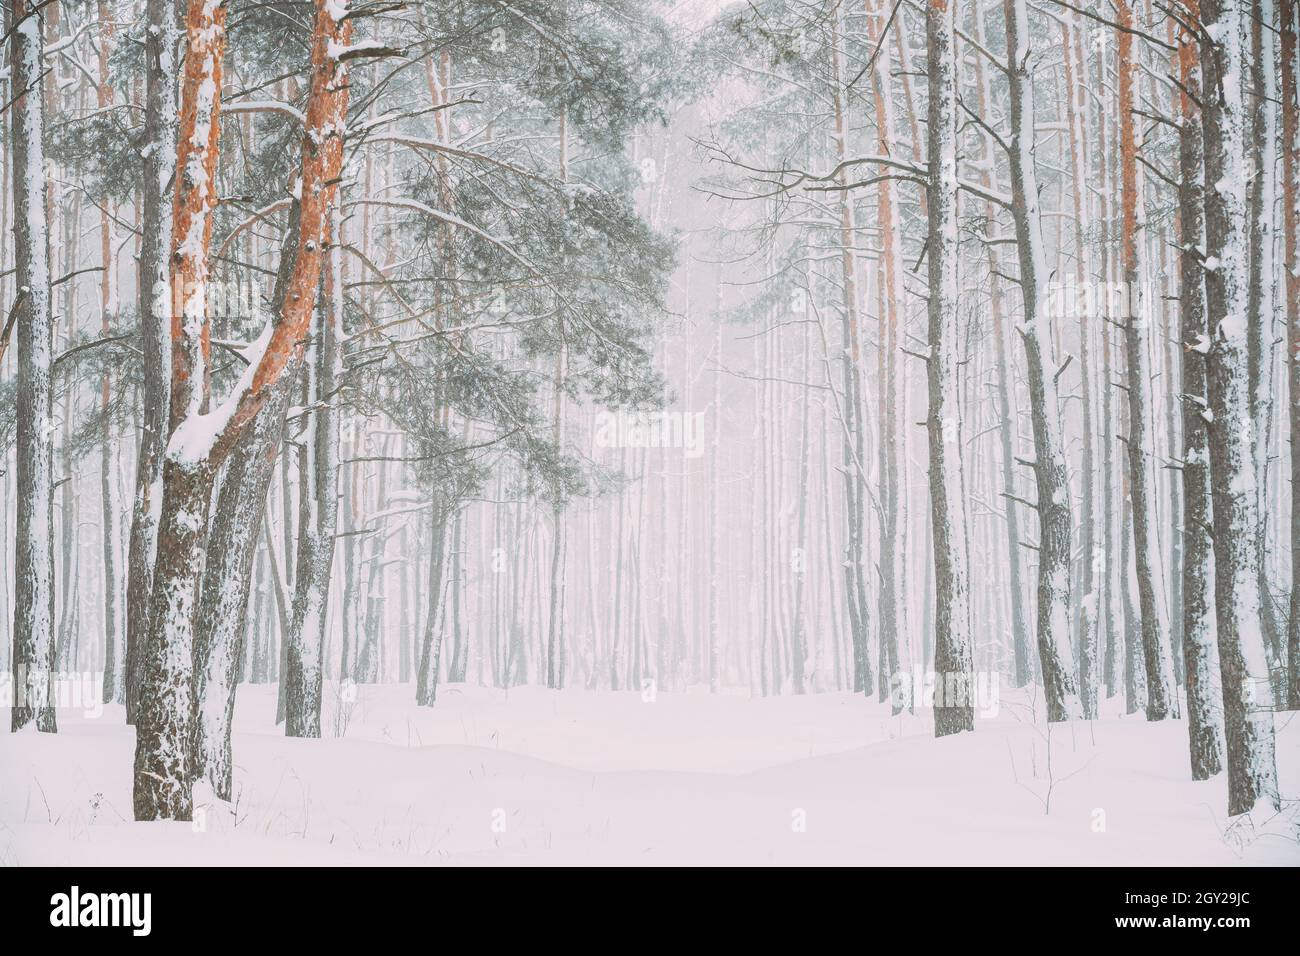 Belle route de la forêt blanche de neige en hiver Frosty Day. Neige dans les bois givré d'hiver. Météo enneigée. Hiver Forêt conifères enneigée. Blizzard po Banque D'Images